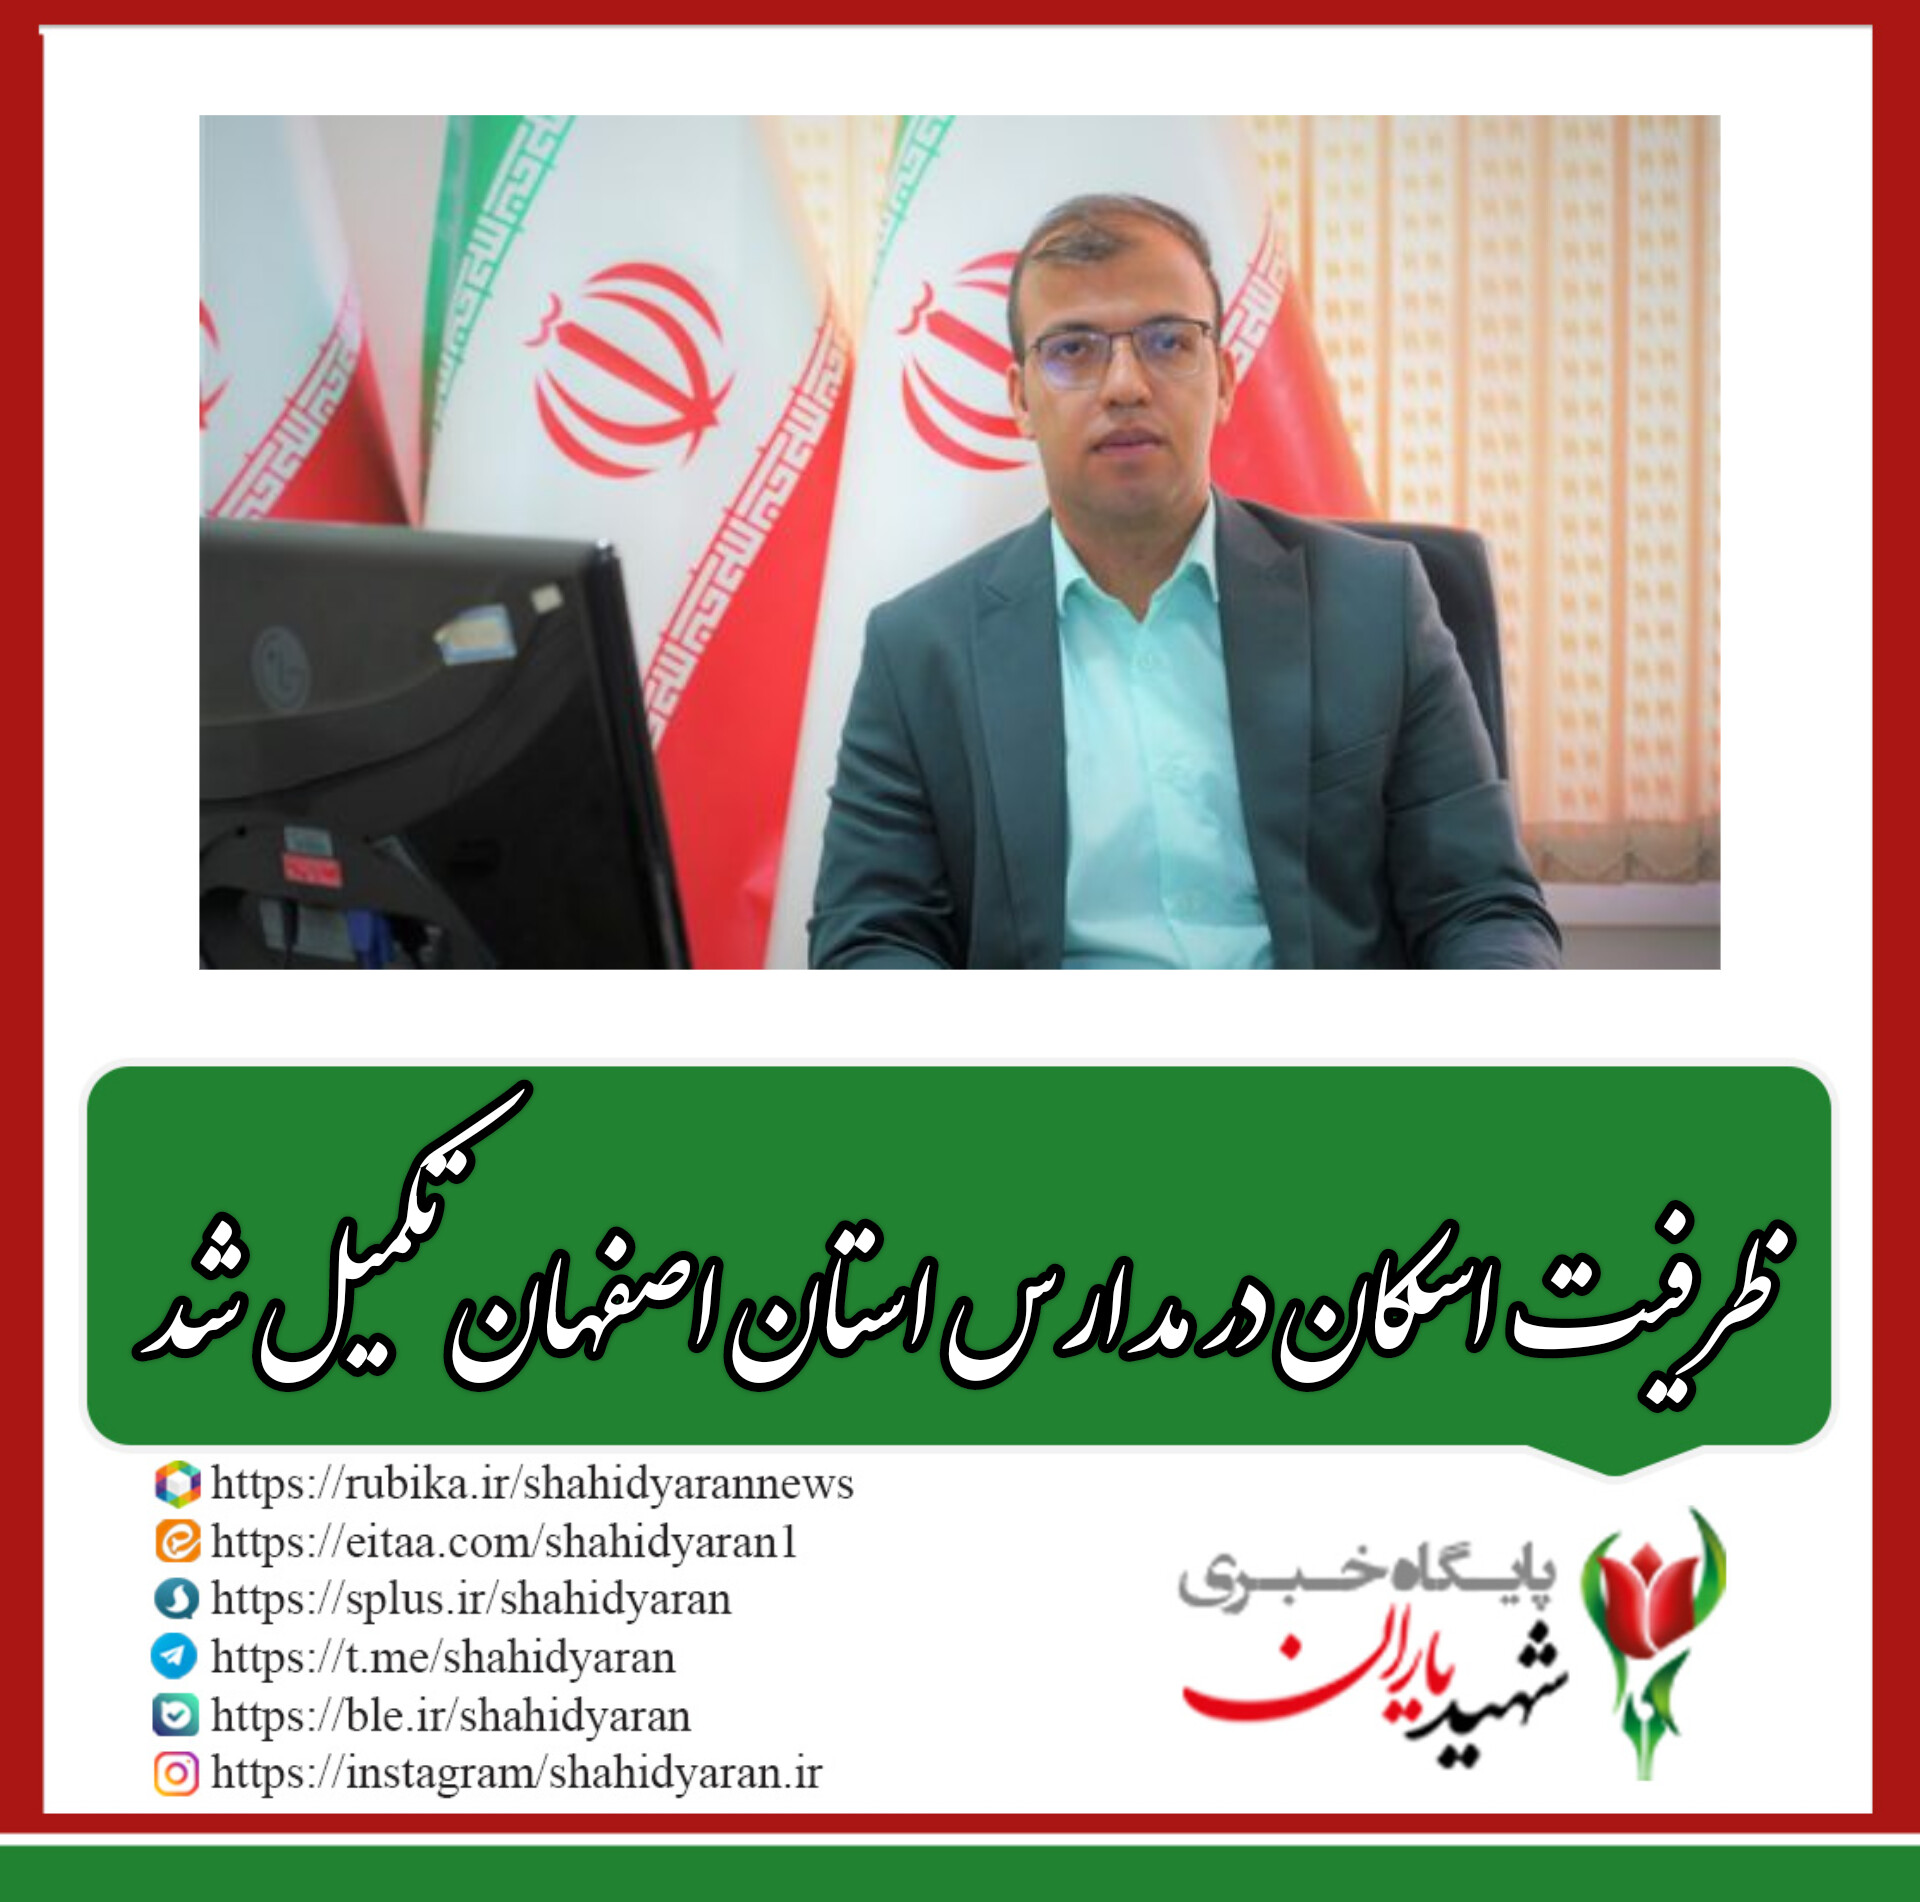 سرپرست اداره کل روابط عمومی آموزش و پرورش استان اصفهان خبر داد: